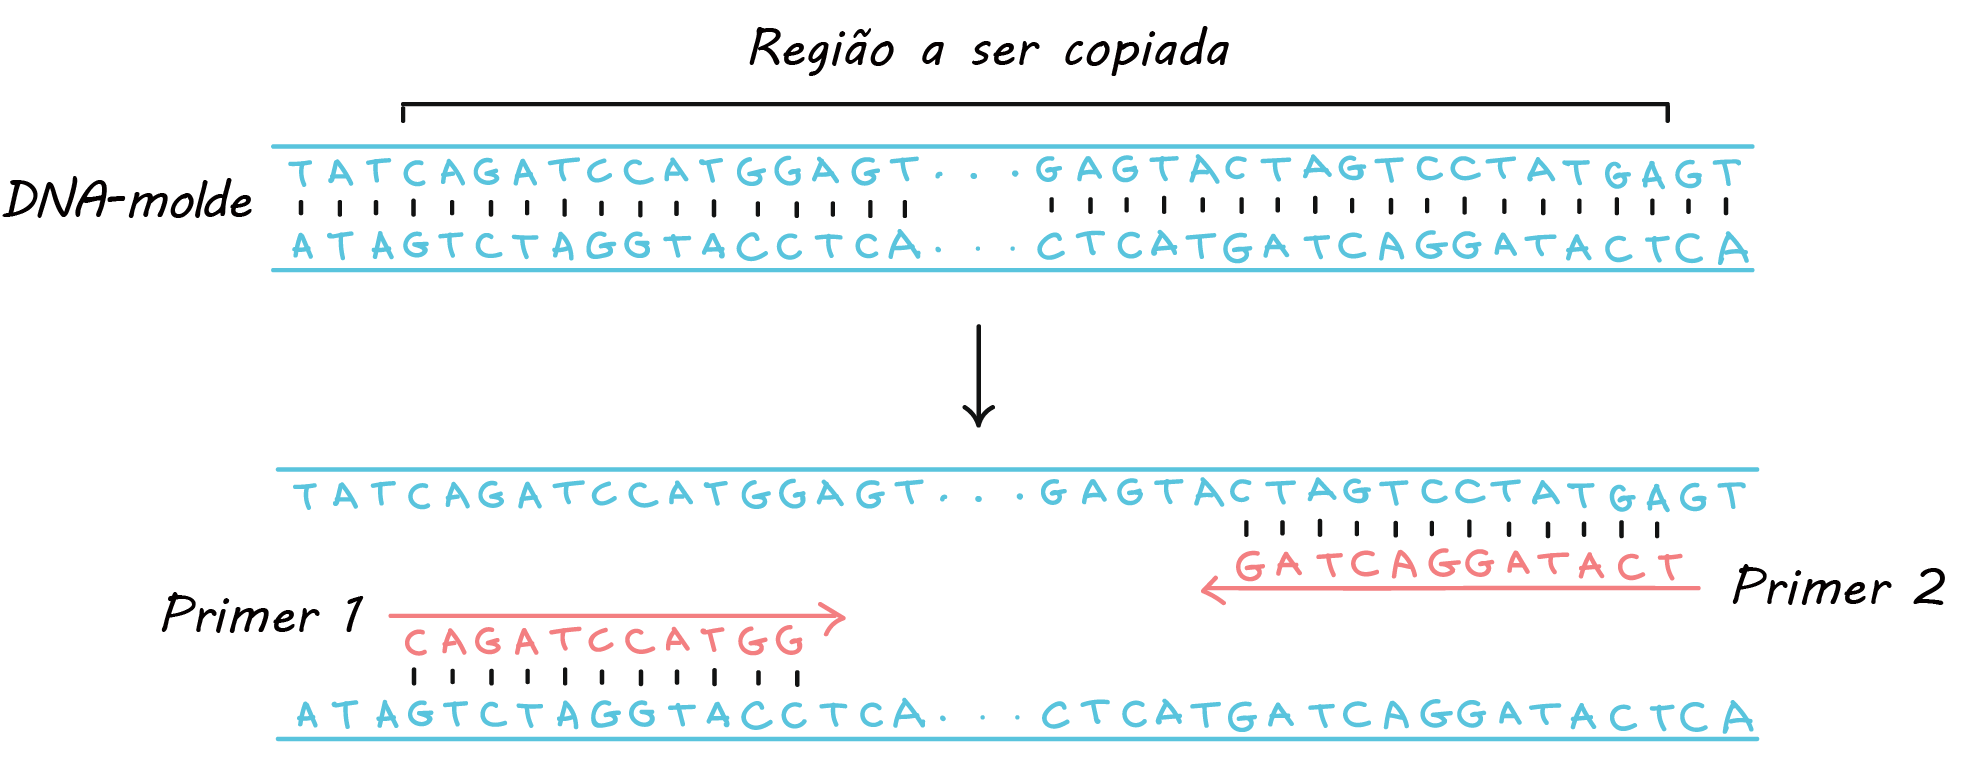 DNA molde:

5' TATCAGATCCATGGAGT...GAGTACTAGTCCTATGAGT 3'
3' ATAGTCTAGGTACCTCA...CTCATGATCAGGATACTCA 5'

Primer 1: 5' CAGATCCATGG 3'
Primer 2: 